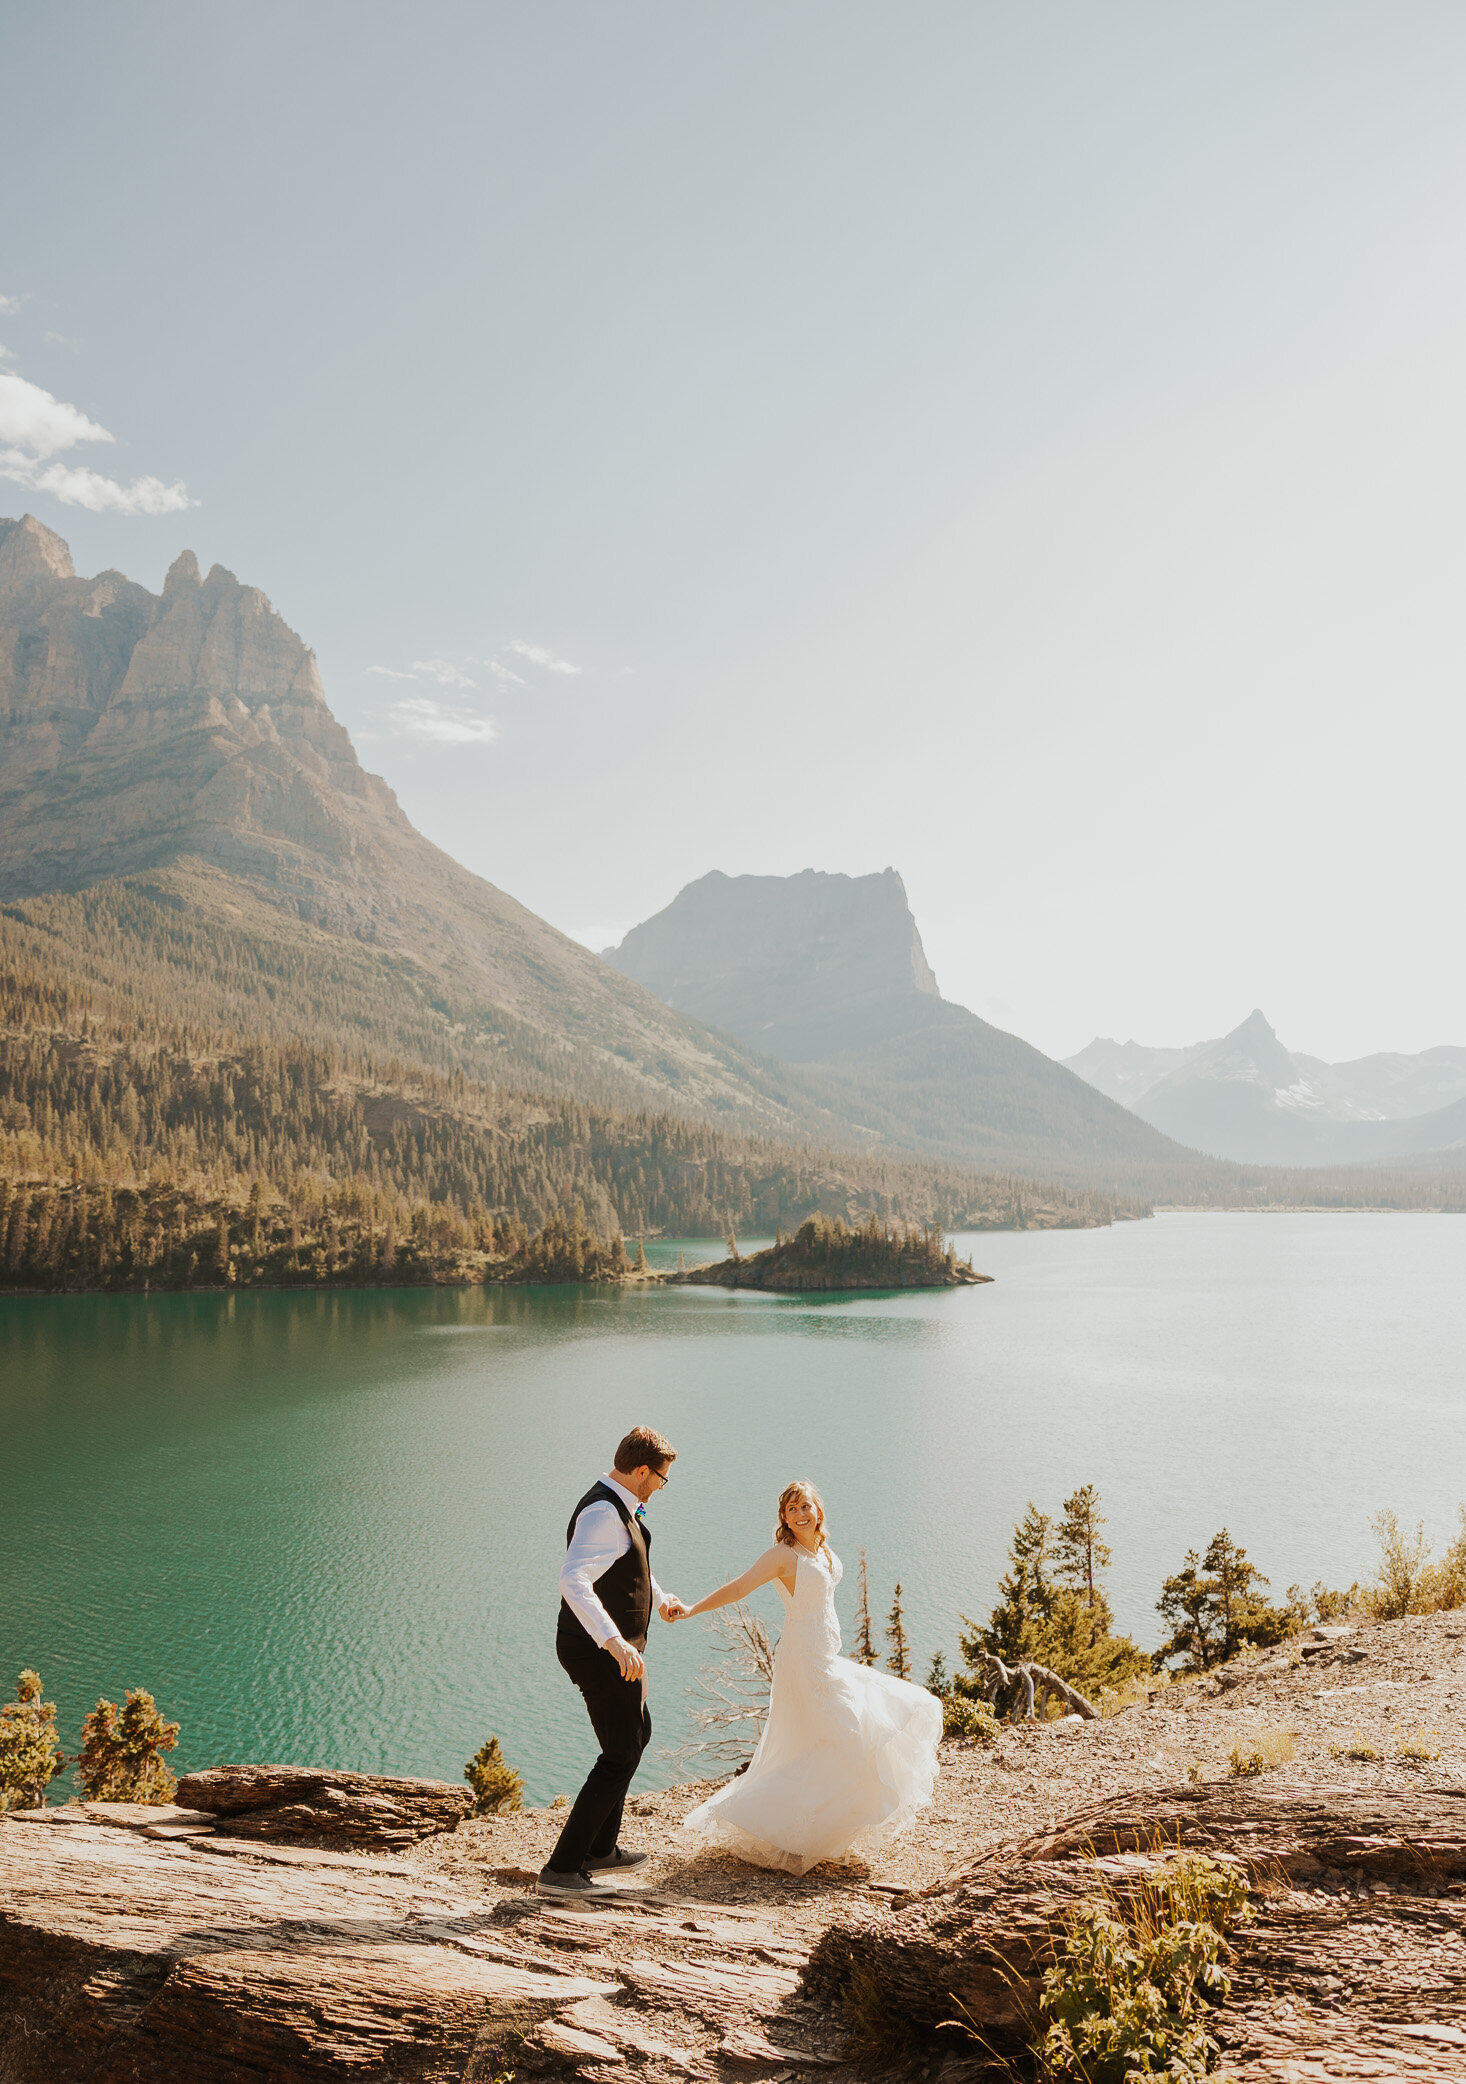 Get married in Glacier National Park